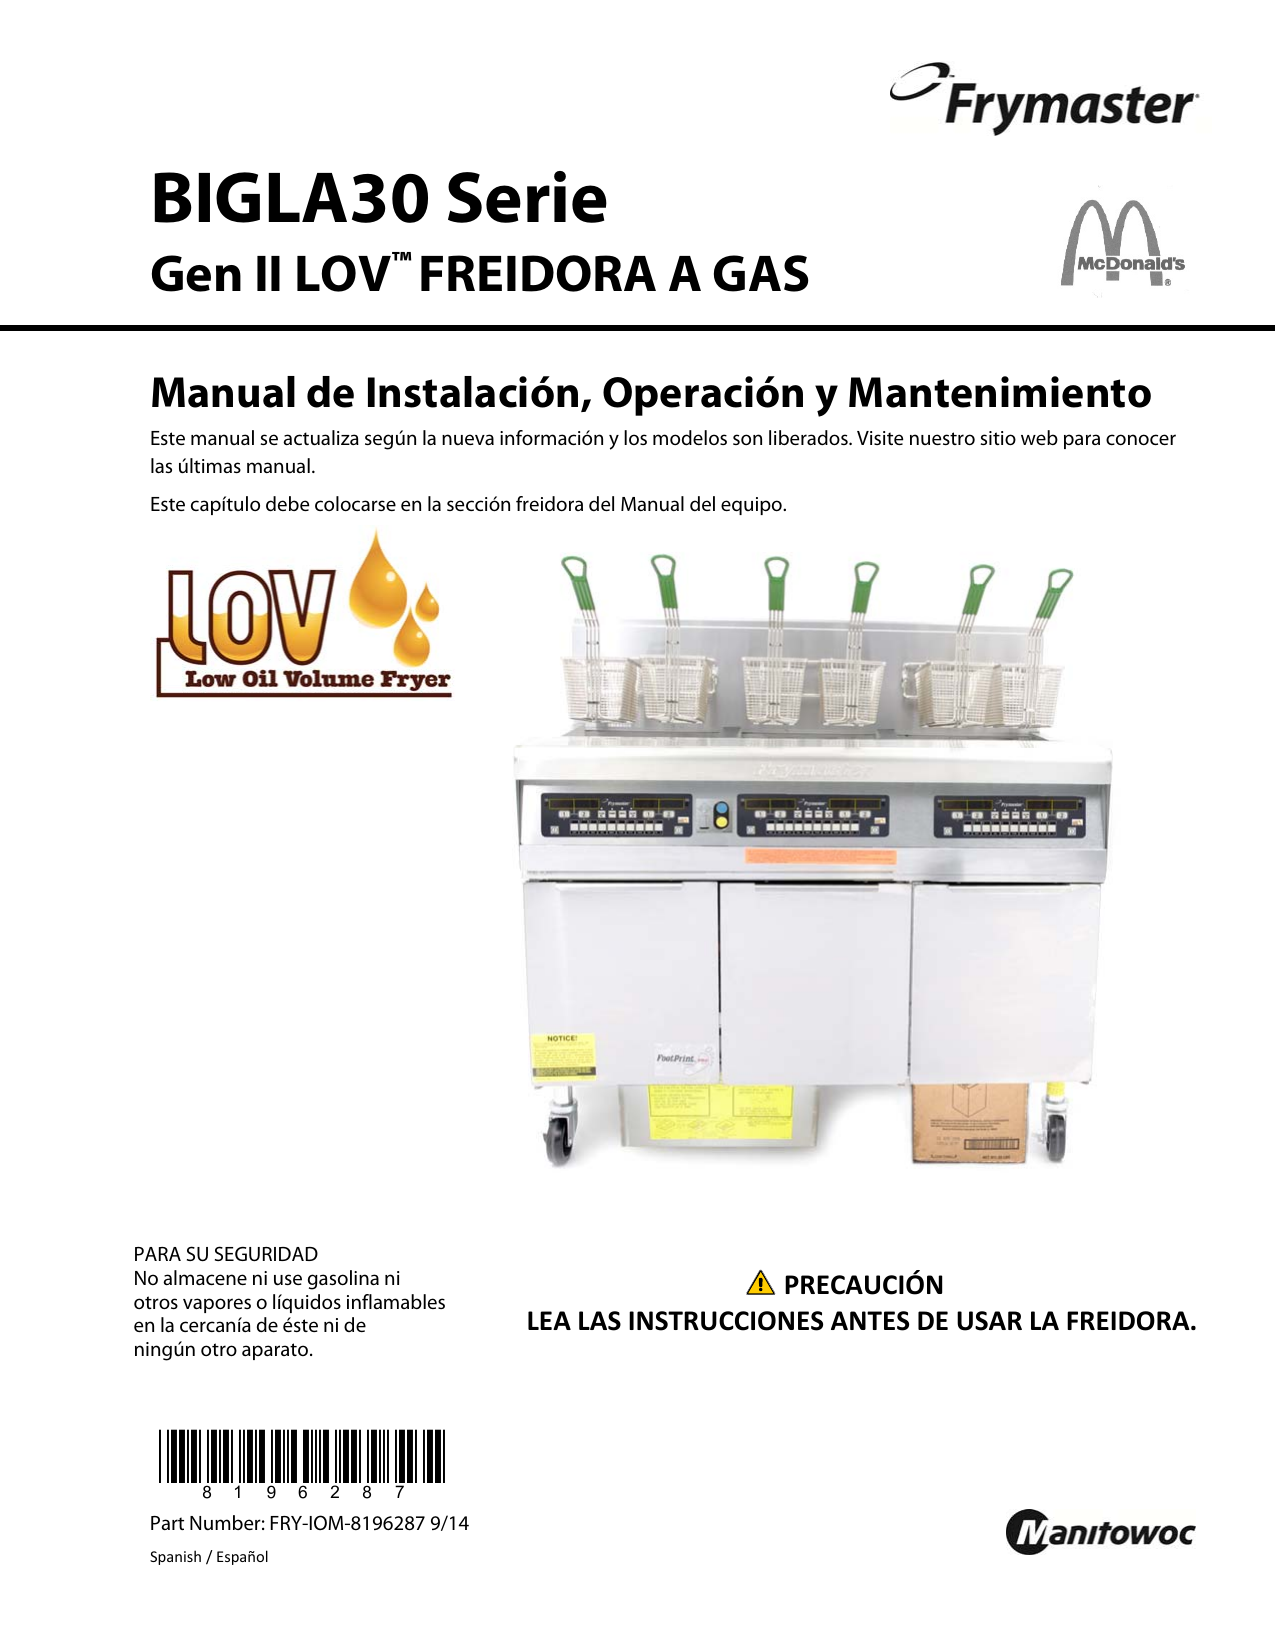 Frymaster – H55 y H55-2 Freidoras de Gas de Alta Eficiencia